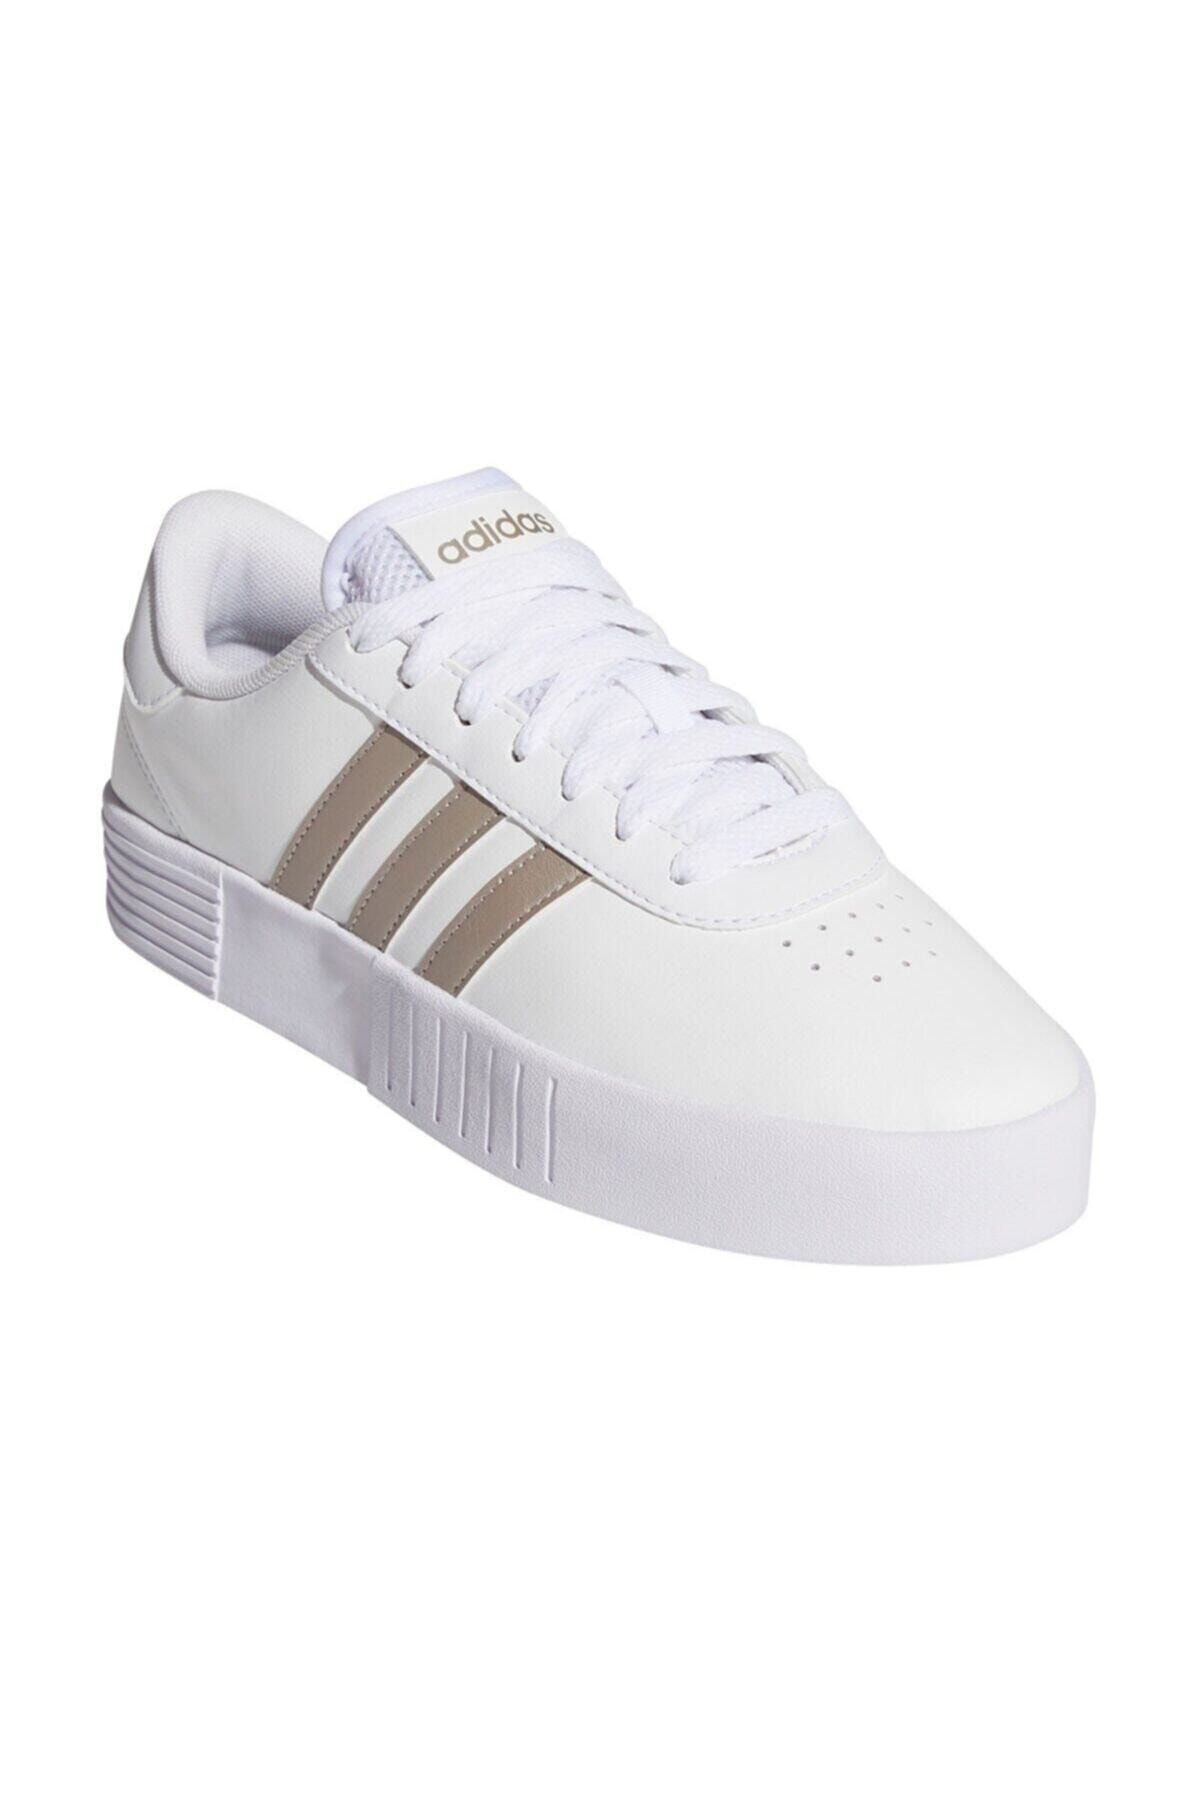 adidas COURT BOLD Beyaz Kadın Sneaker Ayakkabı 100663827